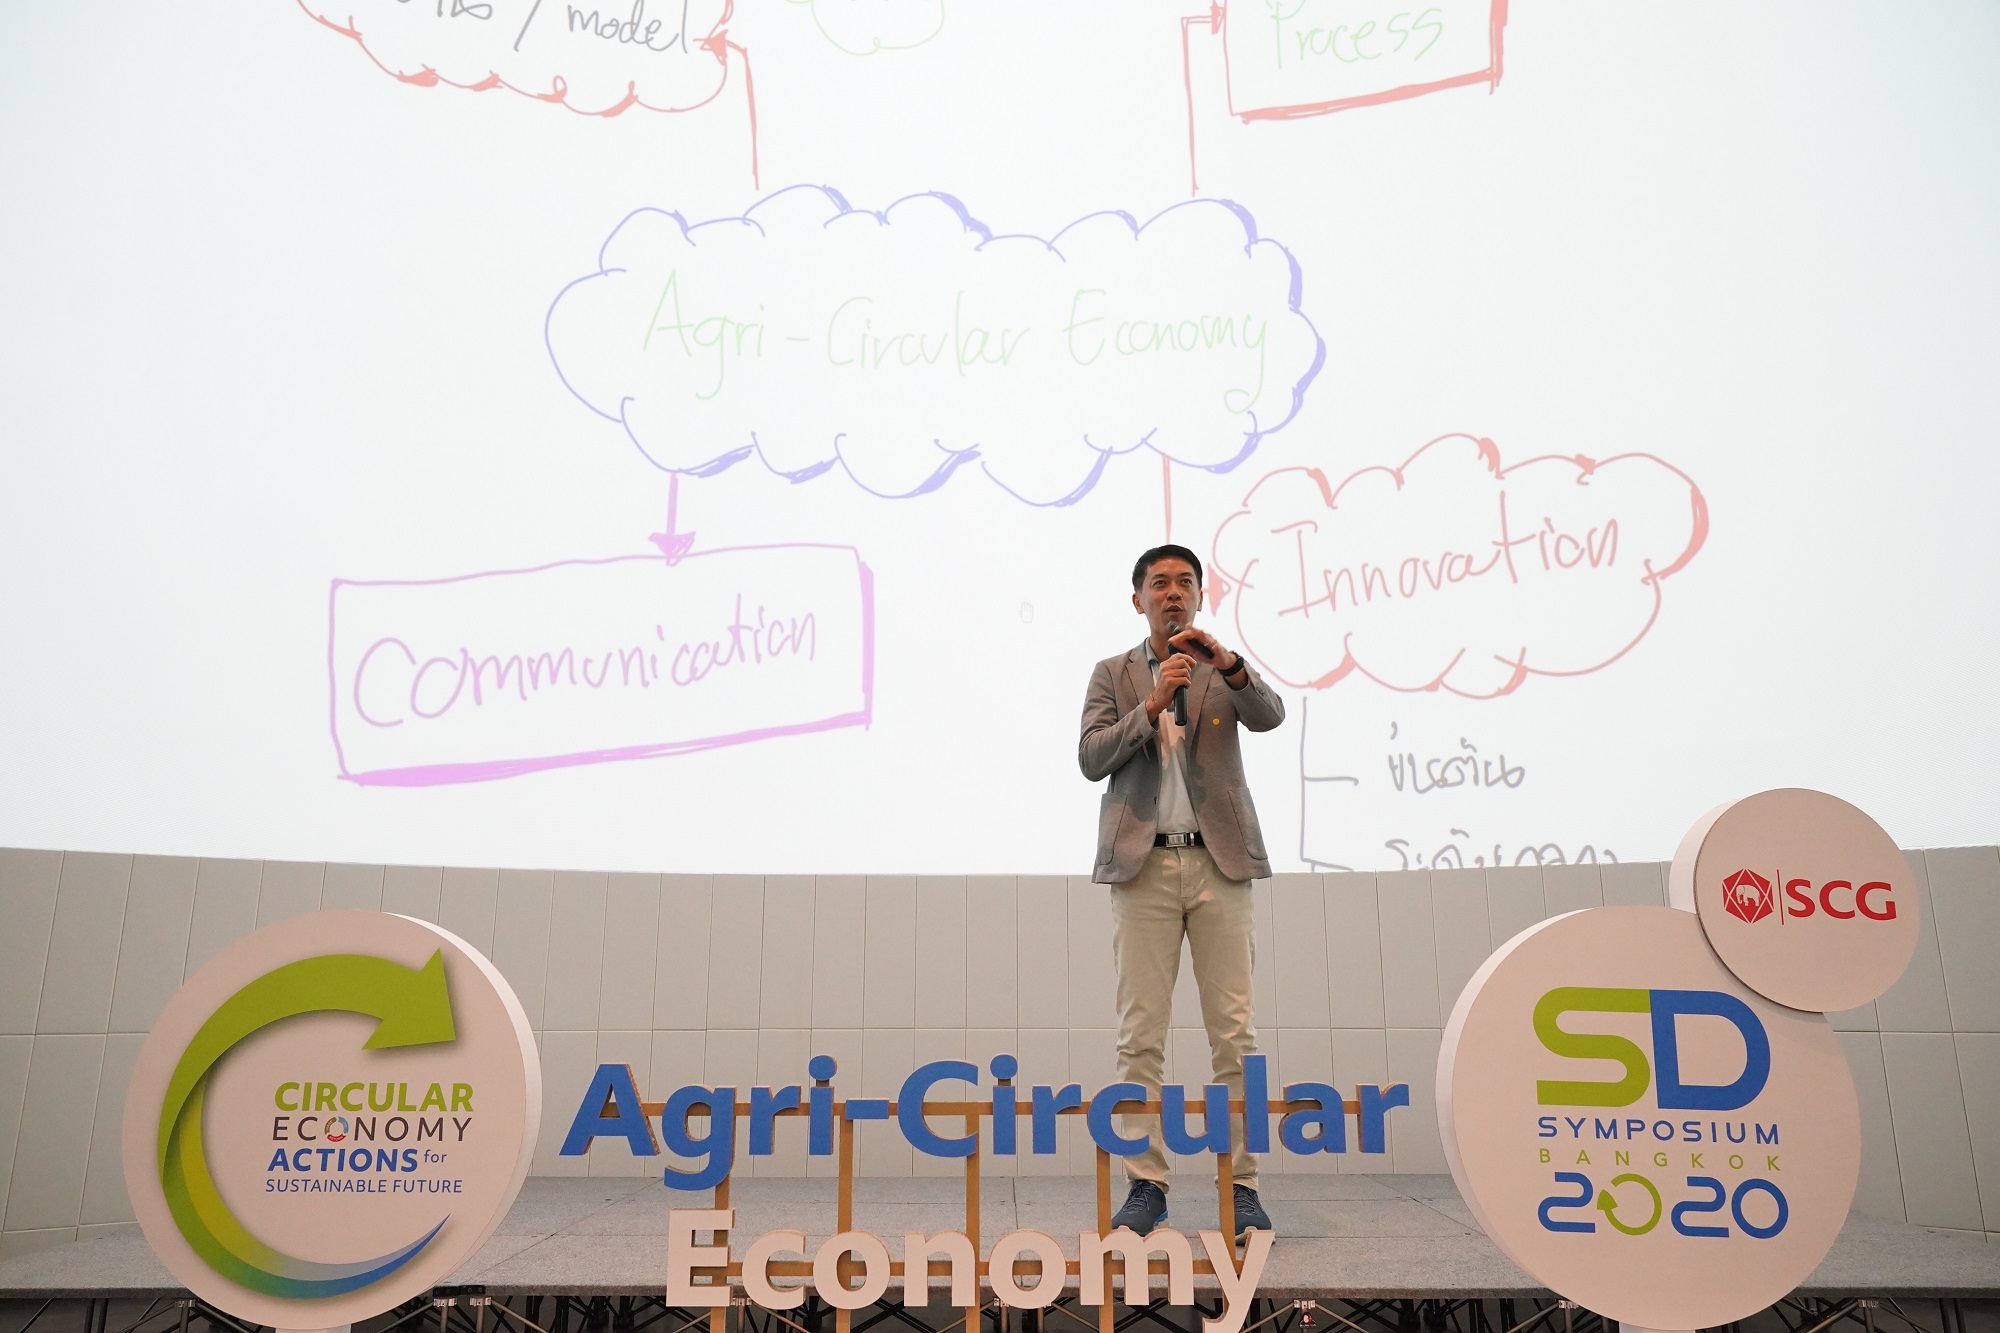 3 ภาคีเครือข่ายร่วมกันระดมสมองขับเคลื่อนเศรษฐกิจหมุนเวียนภาคการเกษตรสู่งาน SD Symposium 2020